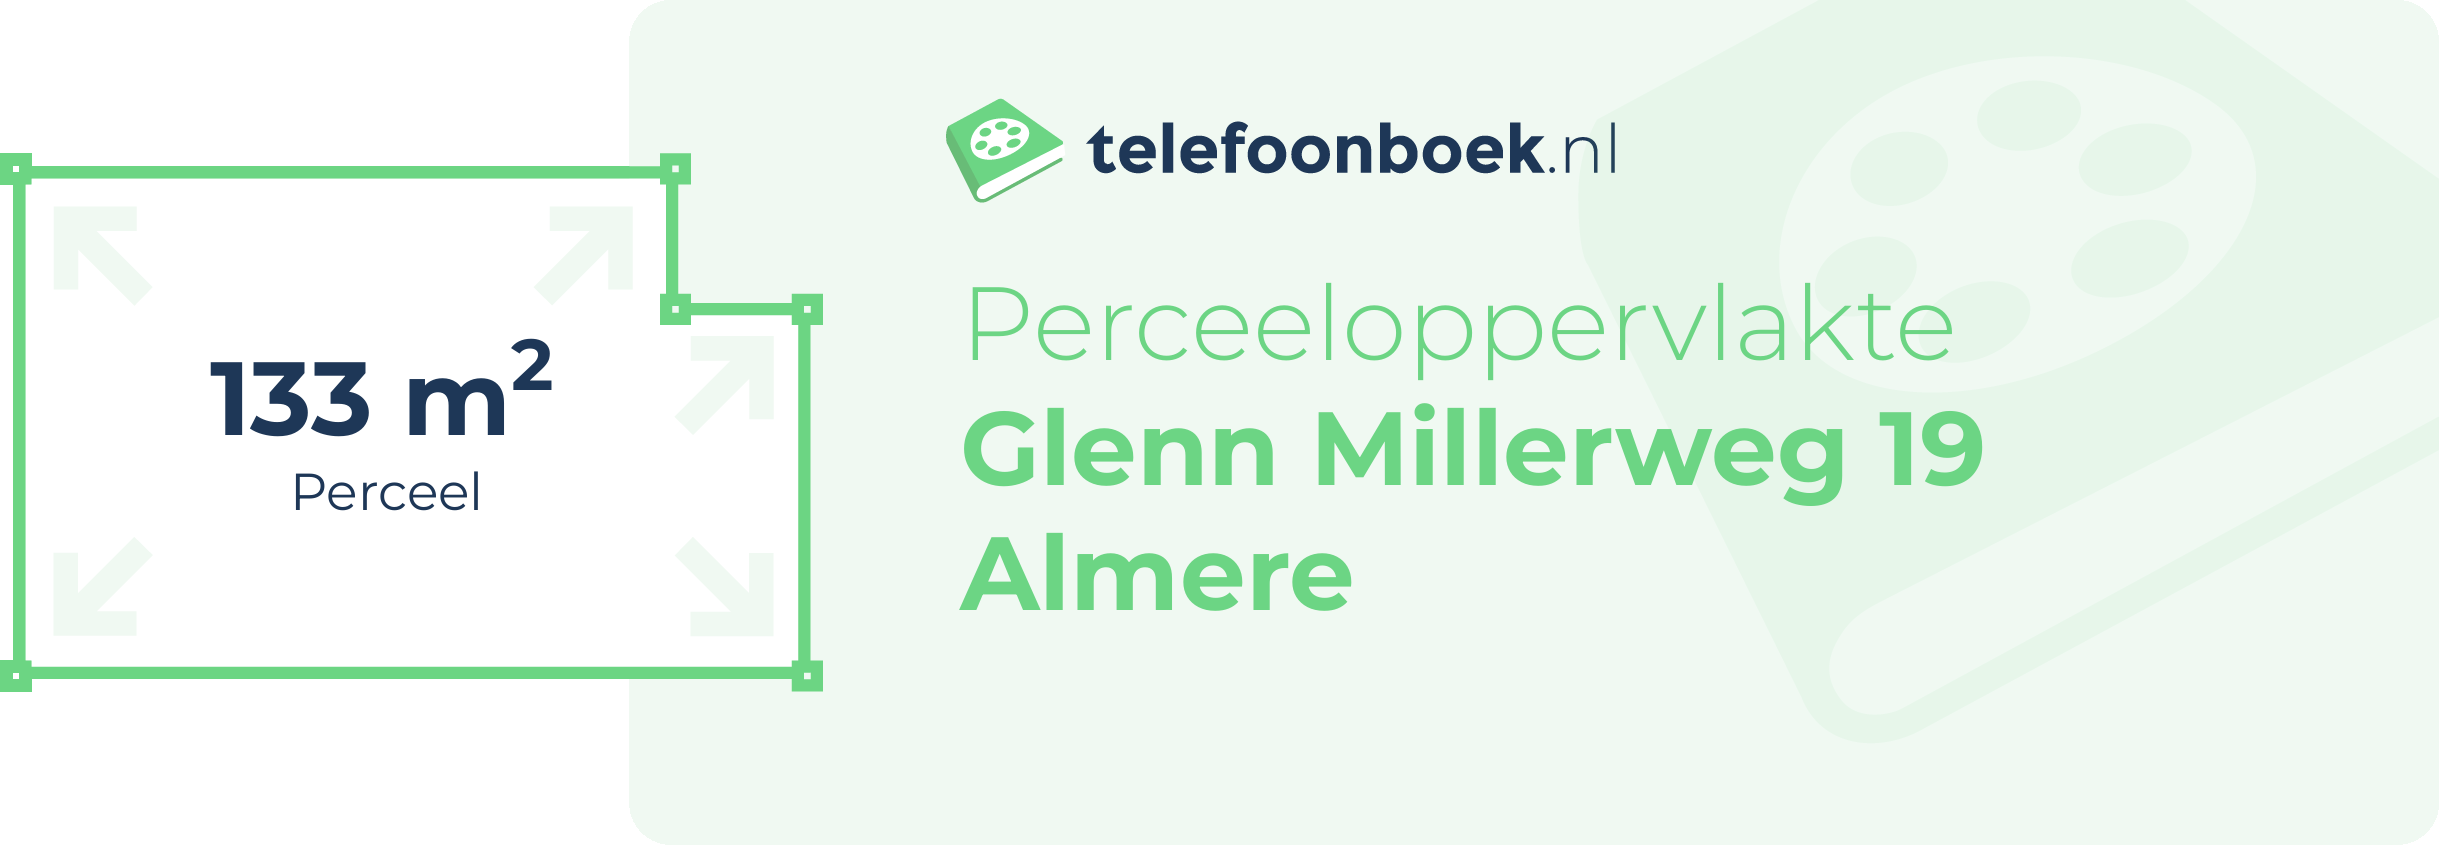 Perceeloppervlakte Glenn Millerweg 19 Almere